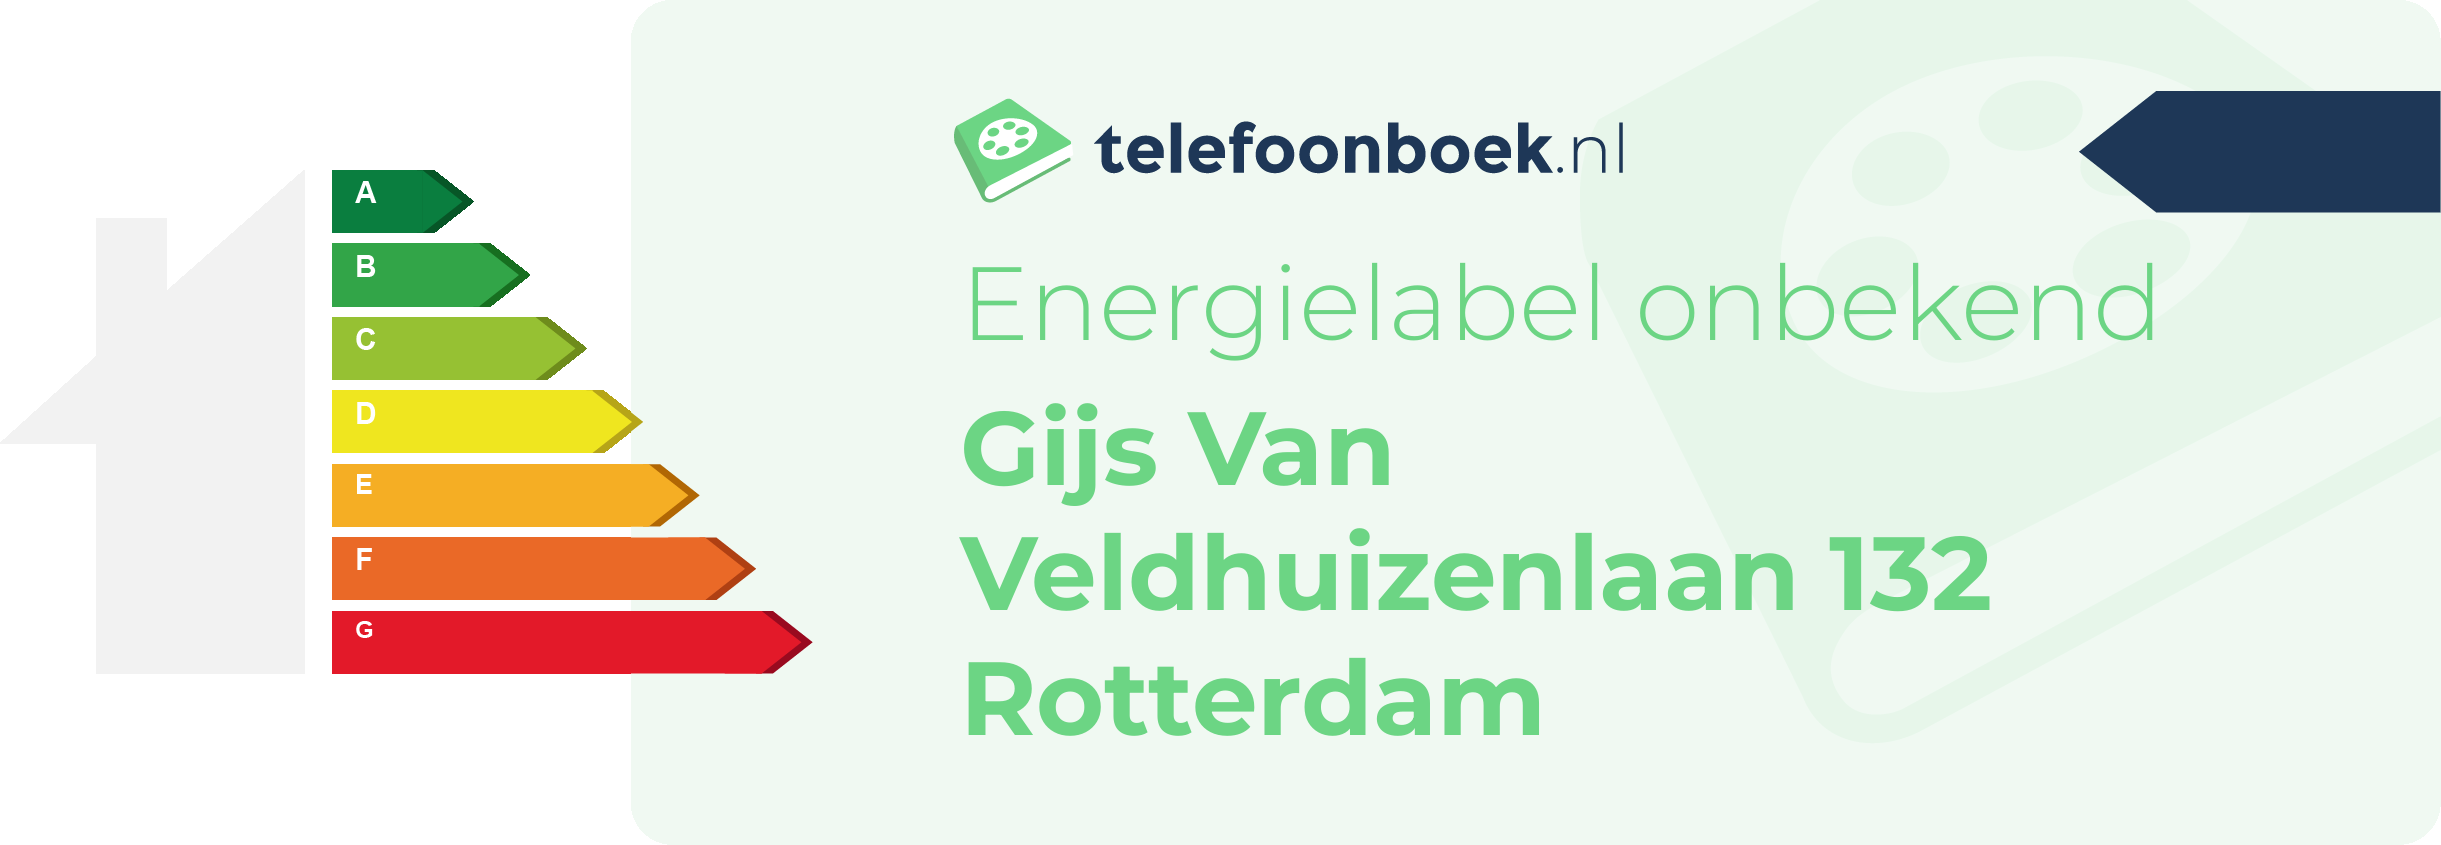 Energielabel Gijs Van Veldhuizenlaan 132 Rotterdam